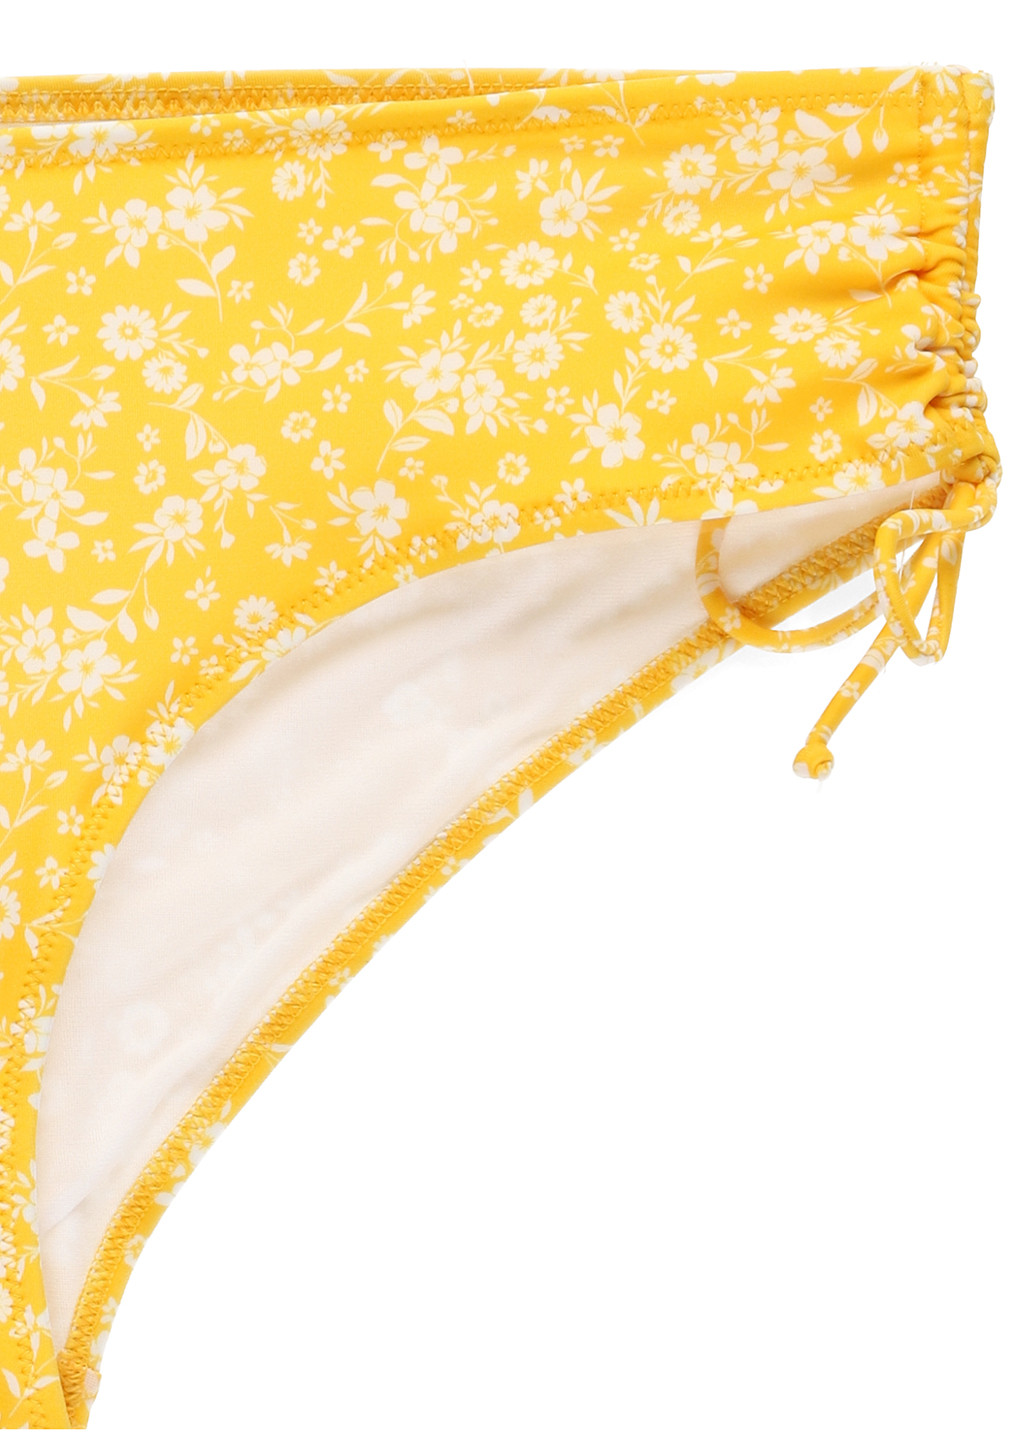 Желтые купальные трусики с цветочным принтом C&A